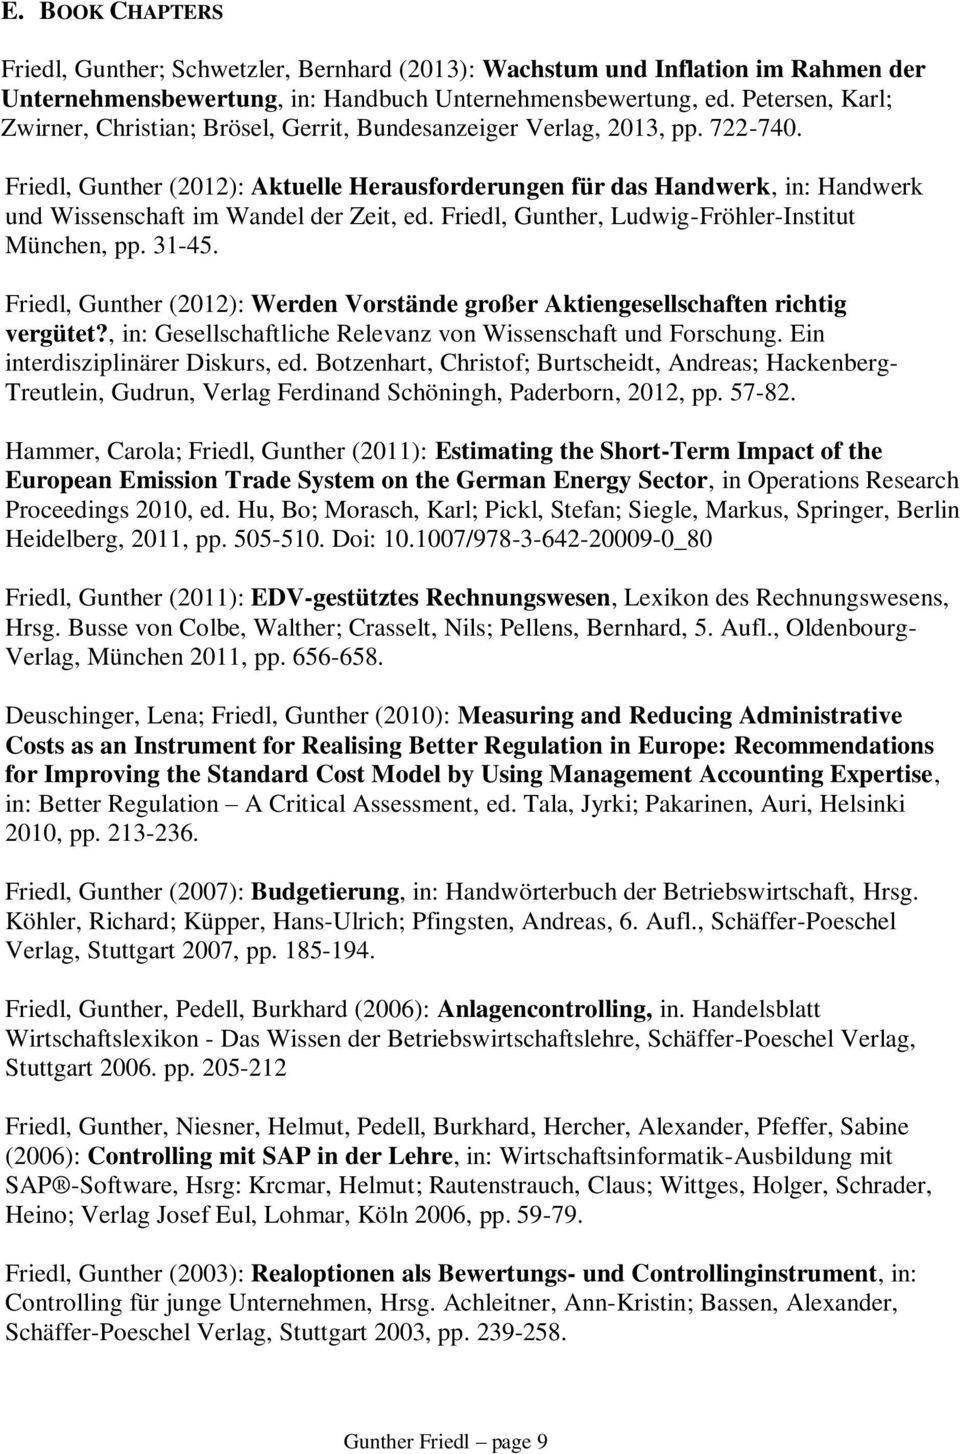 Friedl, Gunther (2012): Aktuelle Herausforderungen für das Handwerk, in: Handwerk und Wissenschaft im Wandel der Zeit, ed. Friedl, Gunther, Ludwig-Fröhler-Institut München, pp. 31-45.